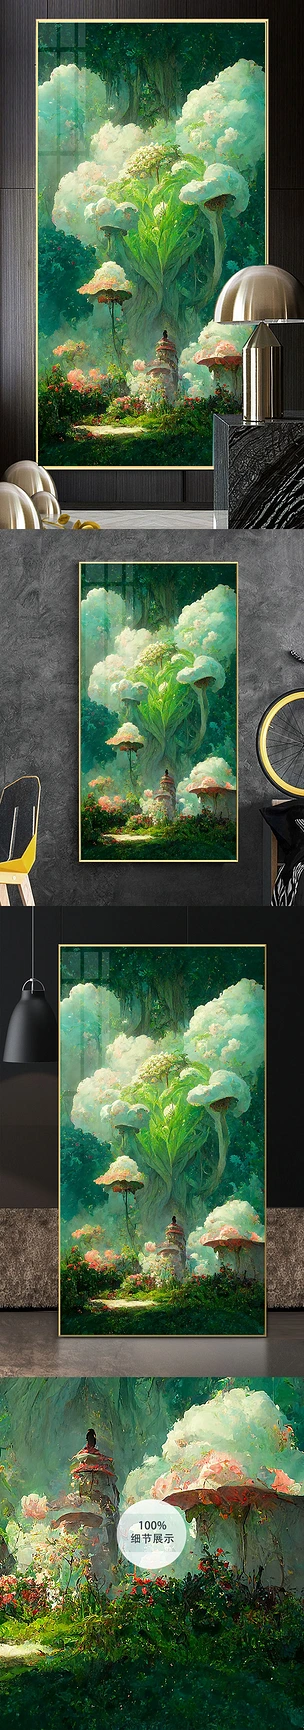 手绘油画梦幻童话森林蘑菇玄关装饰画